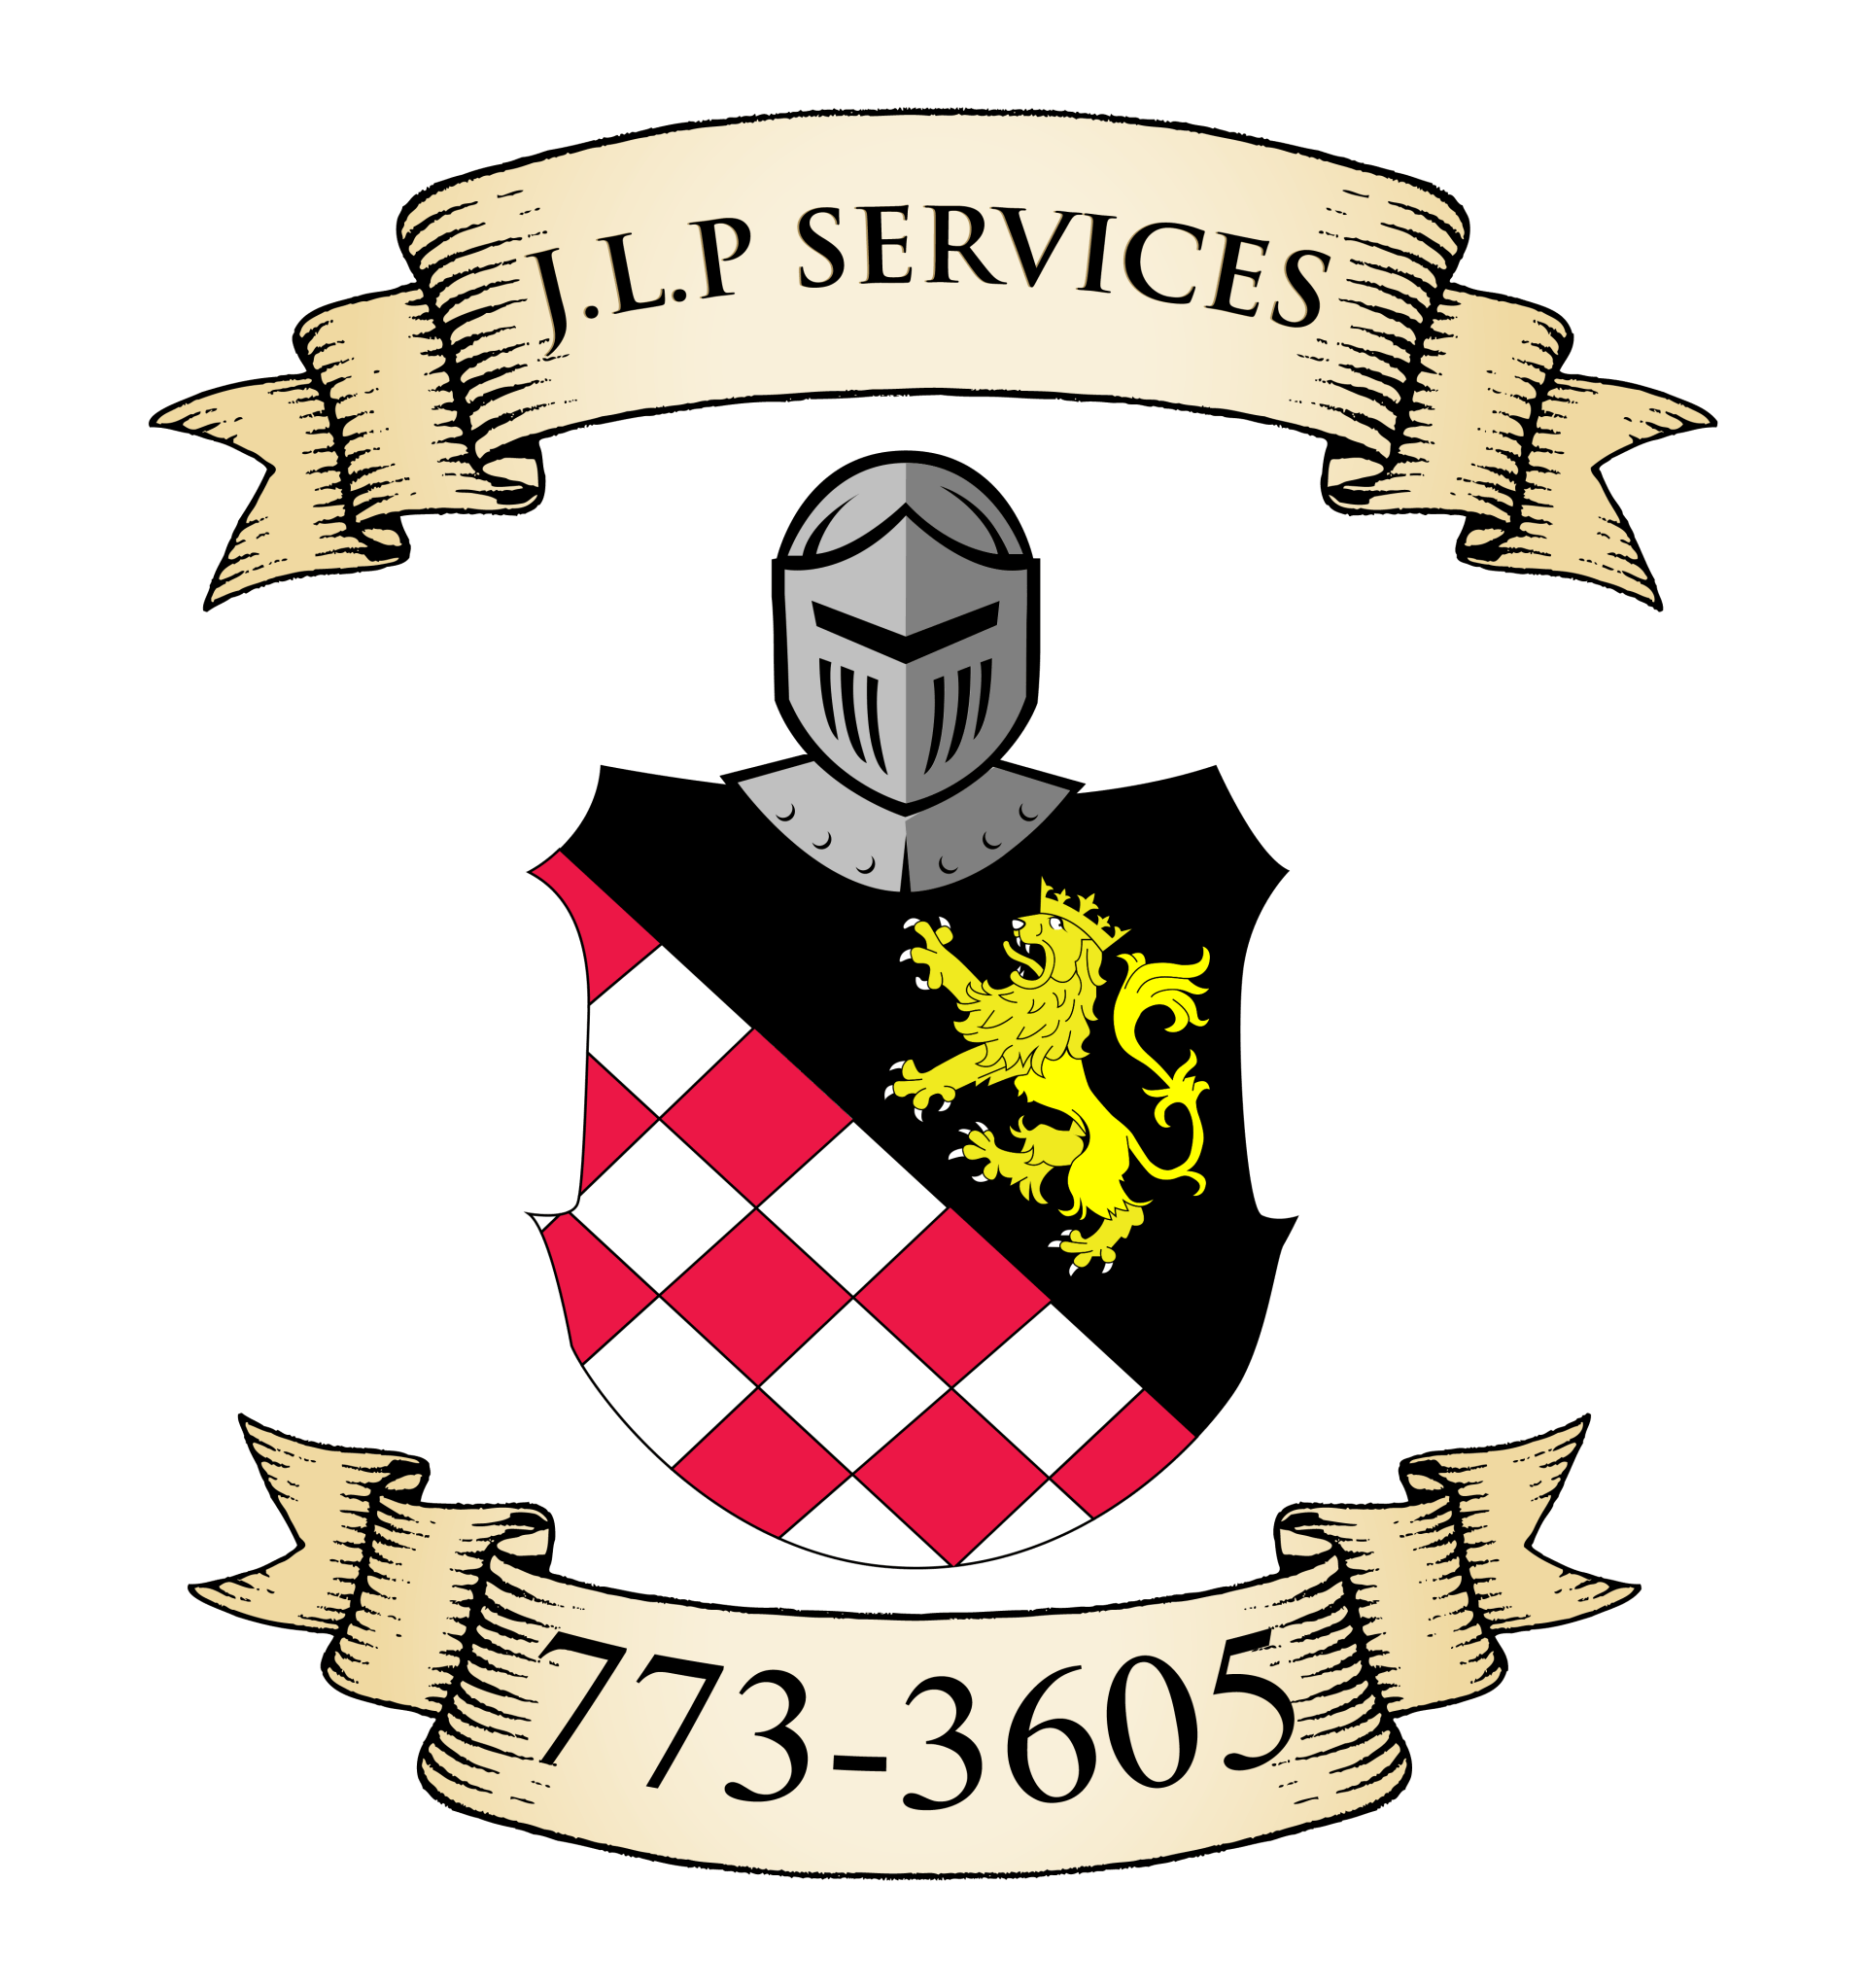 J.L.P. Services